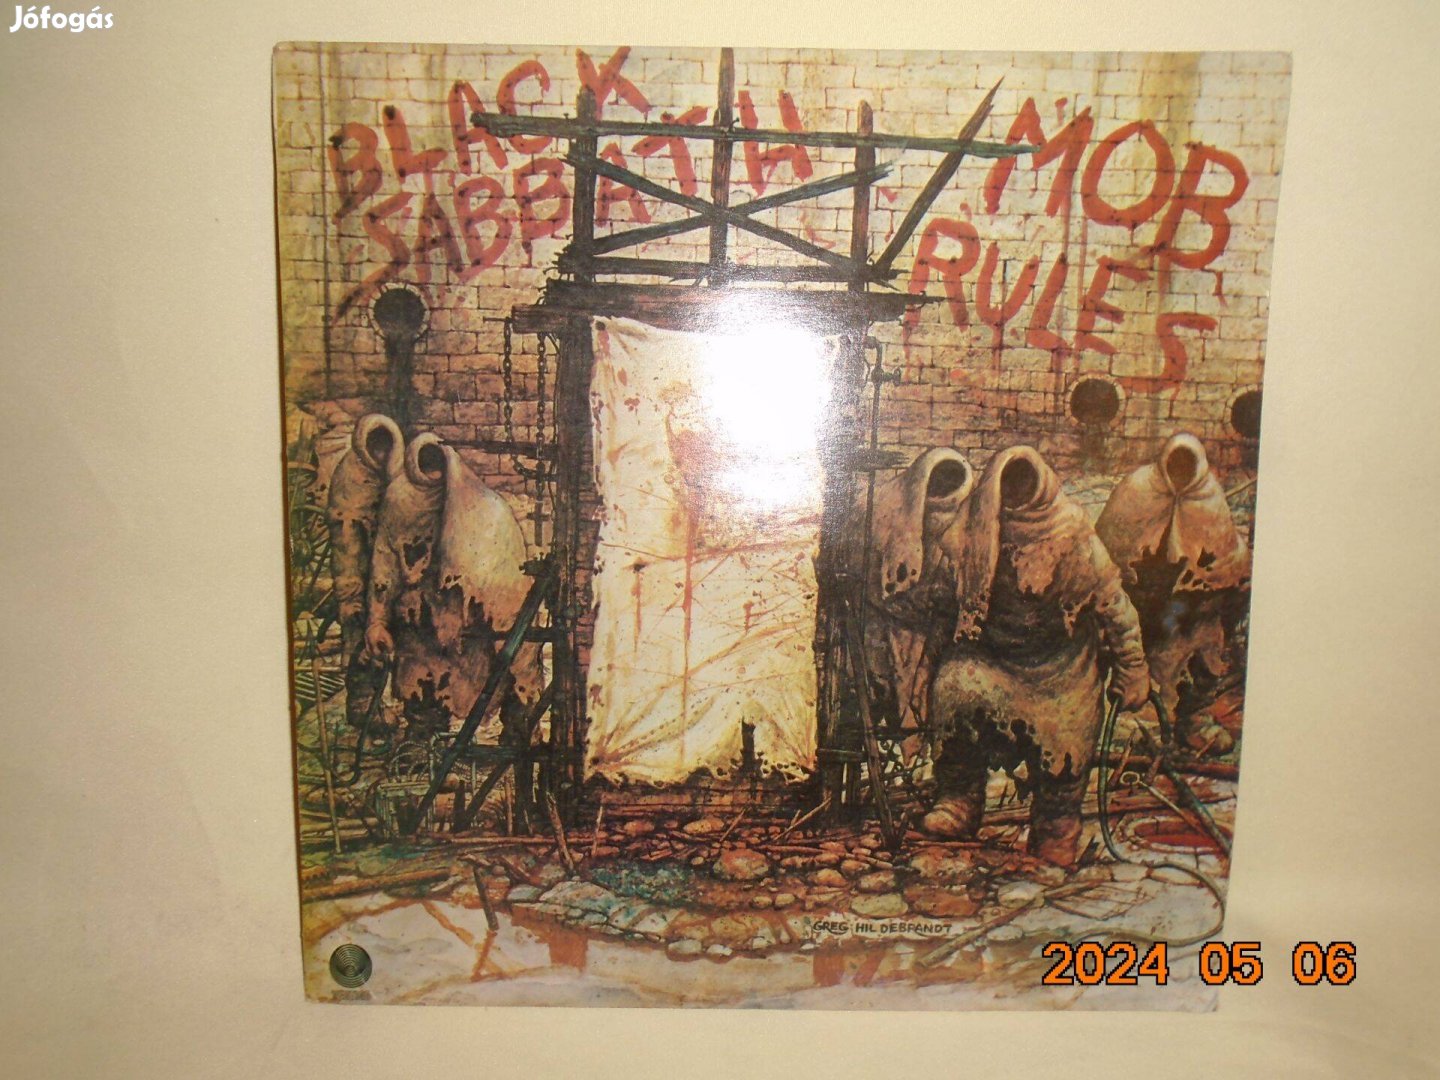 Black sabbath - Mob Rules LP